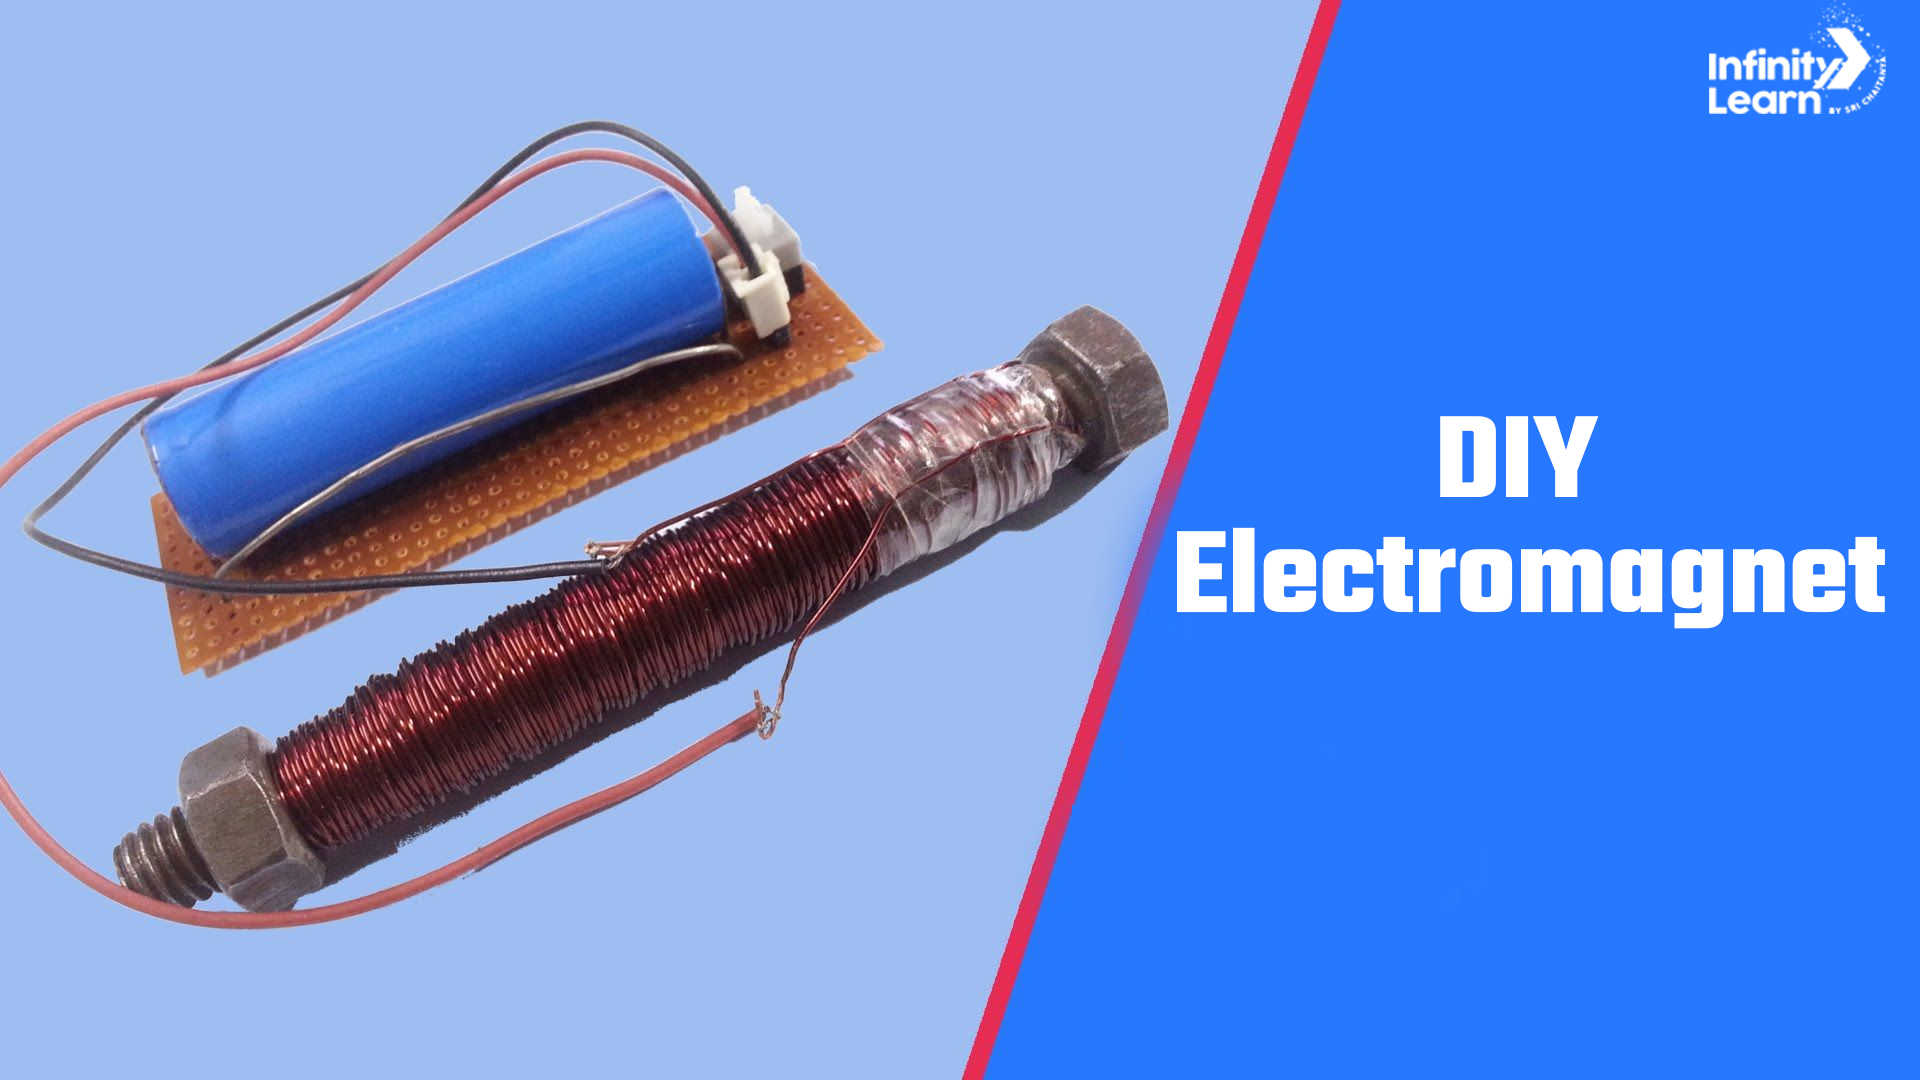 DIY Electromagnet